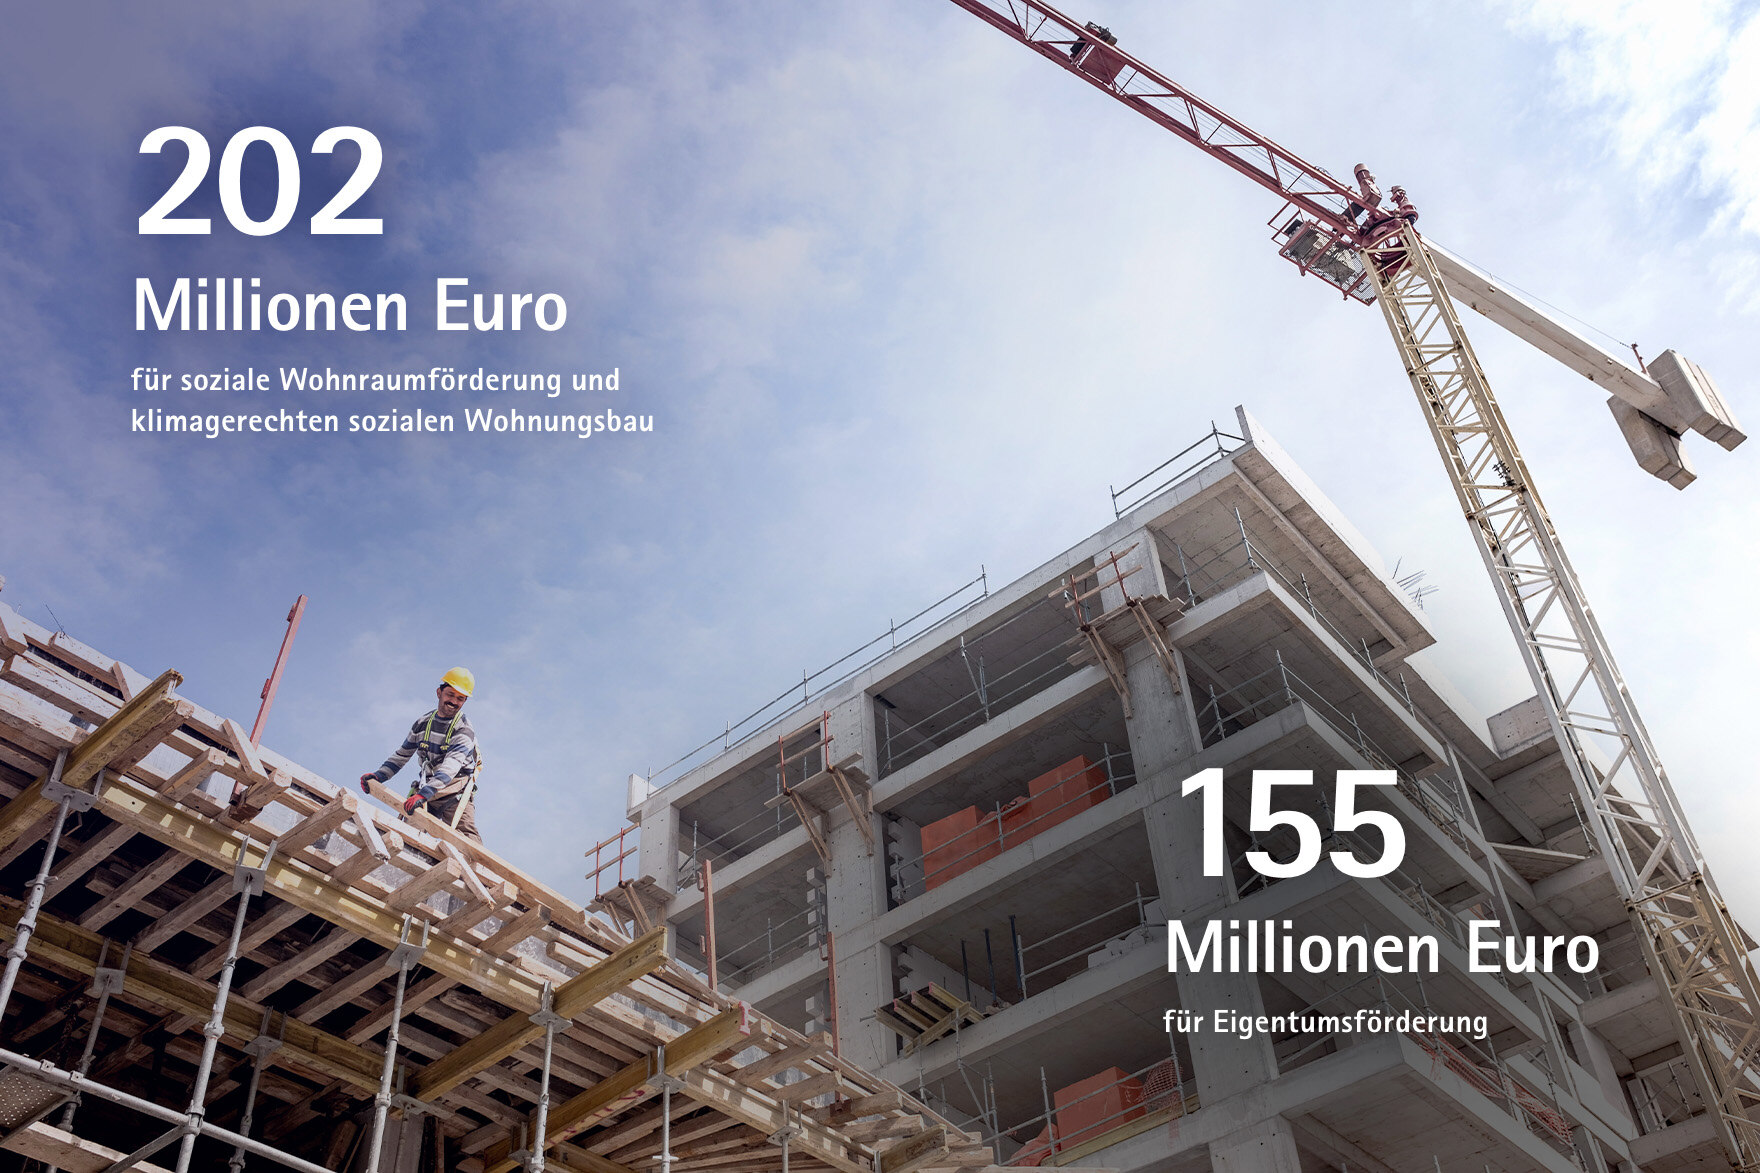 202 Mio. Euro für die soziale Wohnraumförderung und klimagerechten sozialen Wohnungsbau; 155 Millionen Euro für Eigentumsförderung